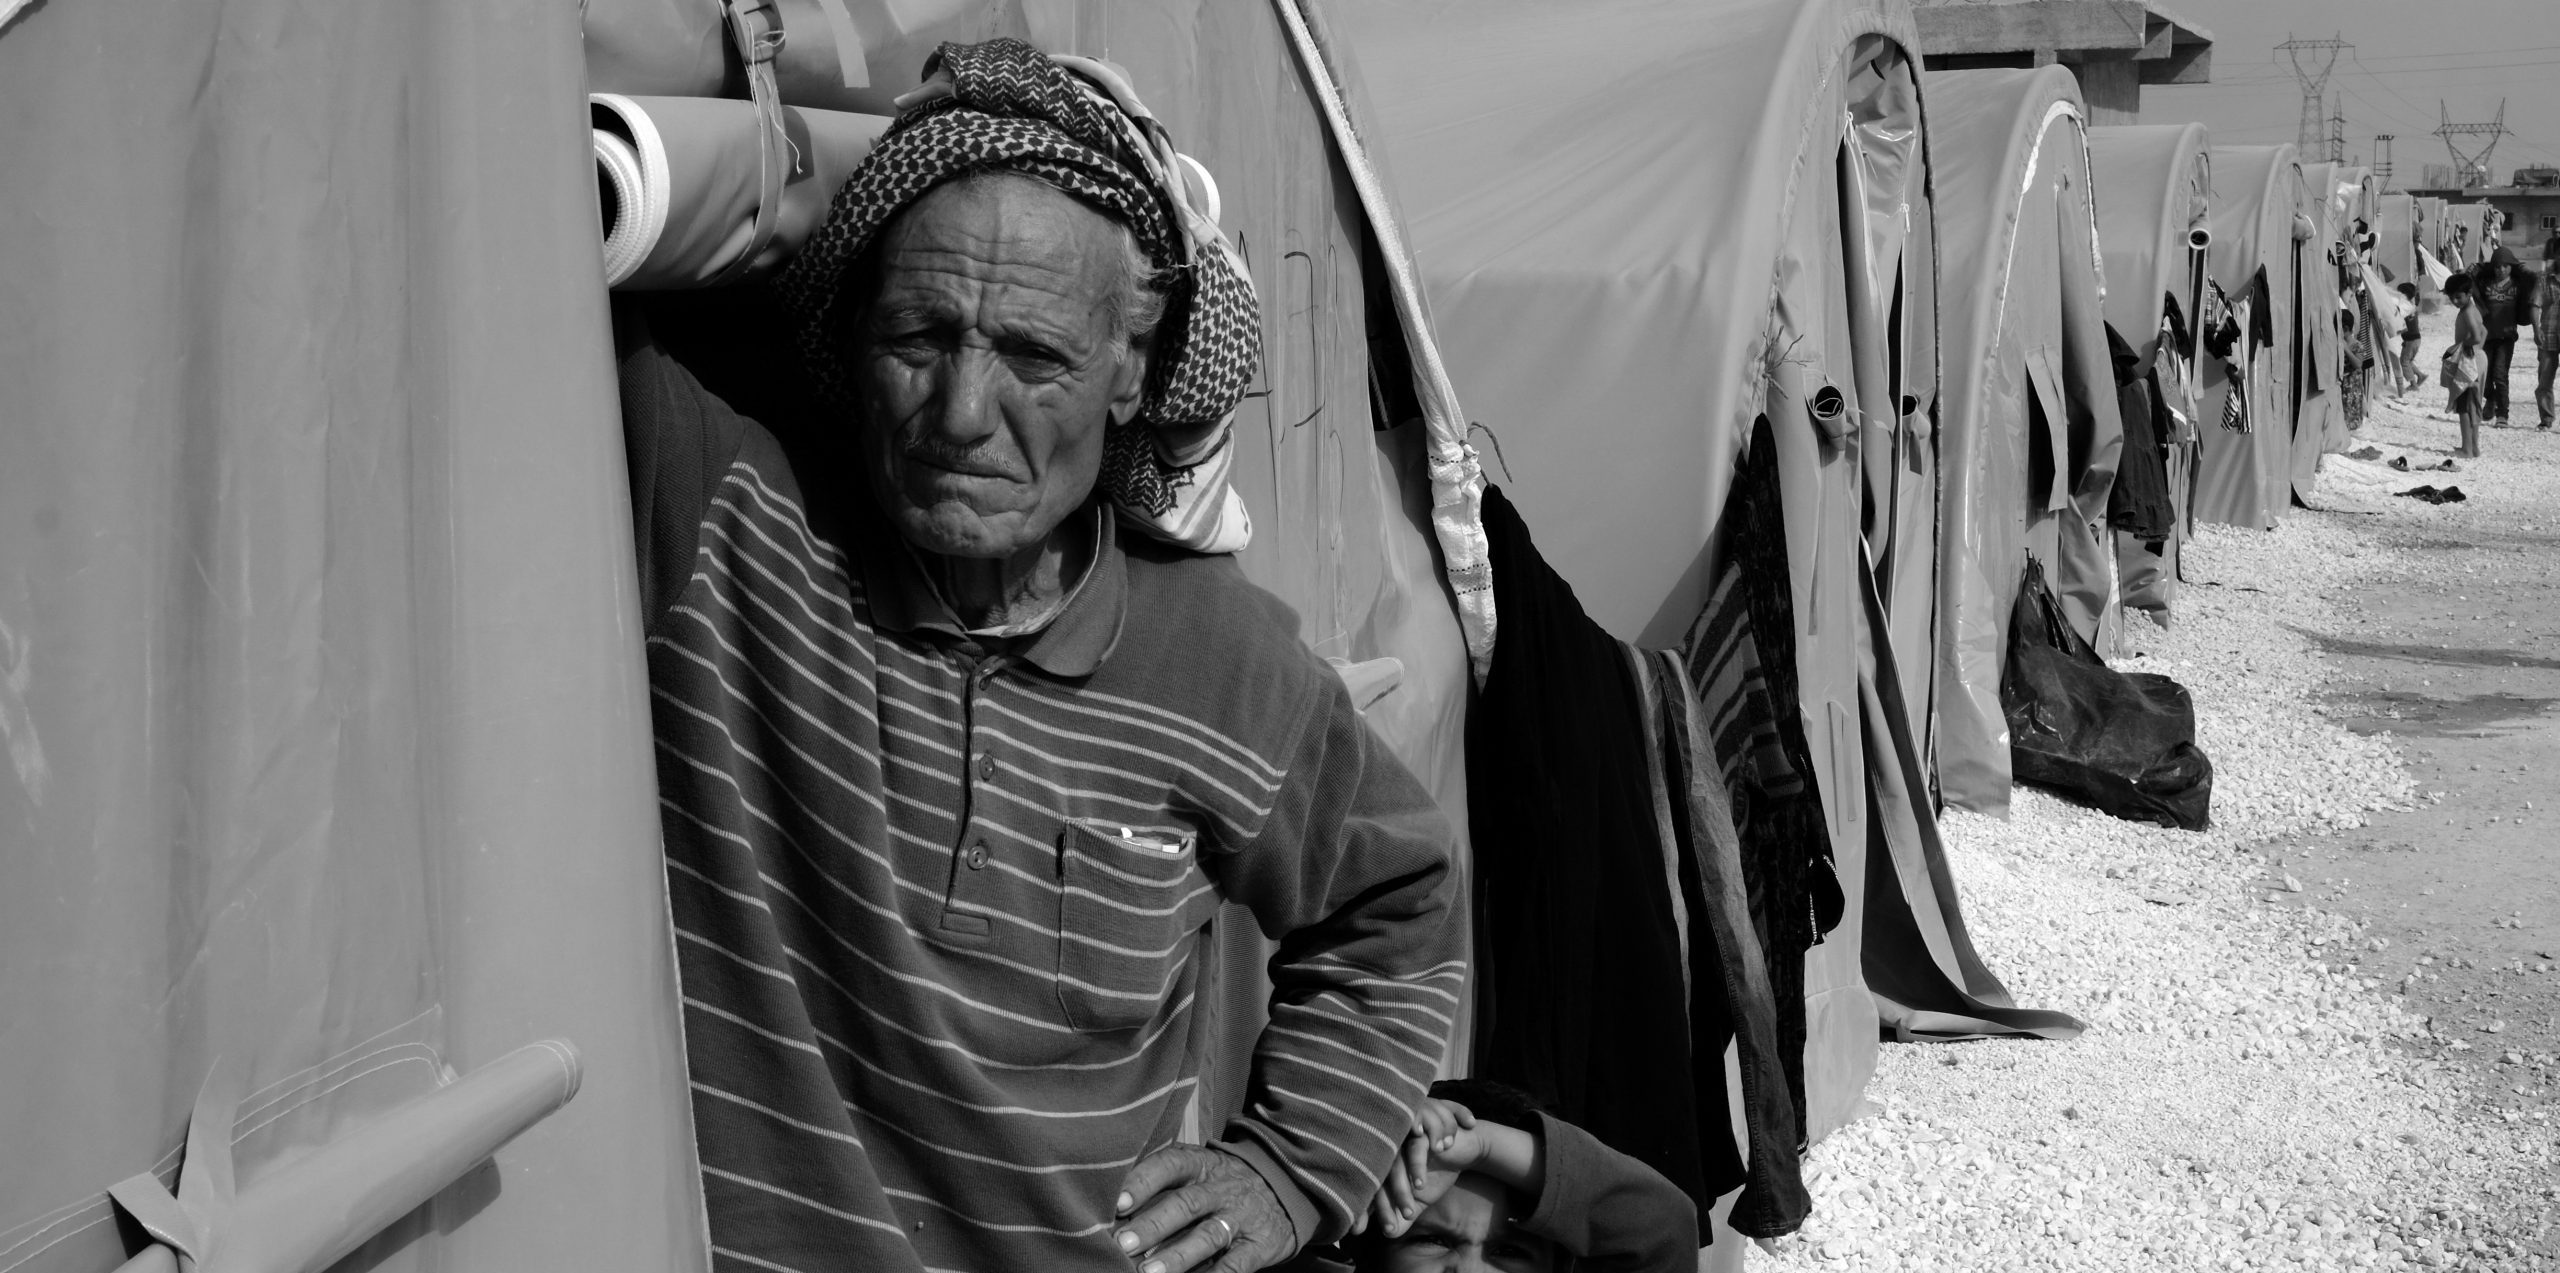 المهجرون قسرياً في الداخل السوري: هل ضاعت الحقوق إلى الأبد؟